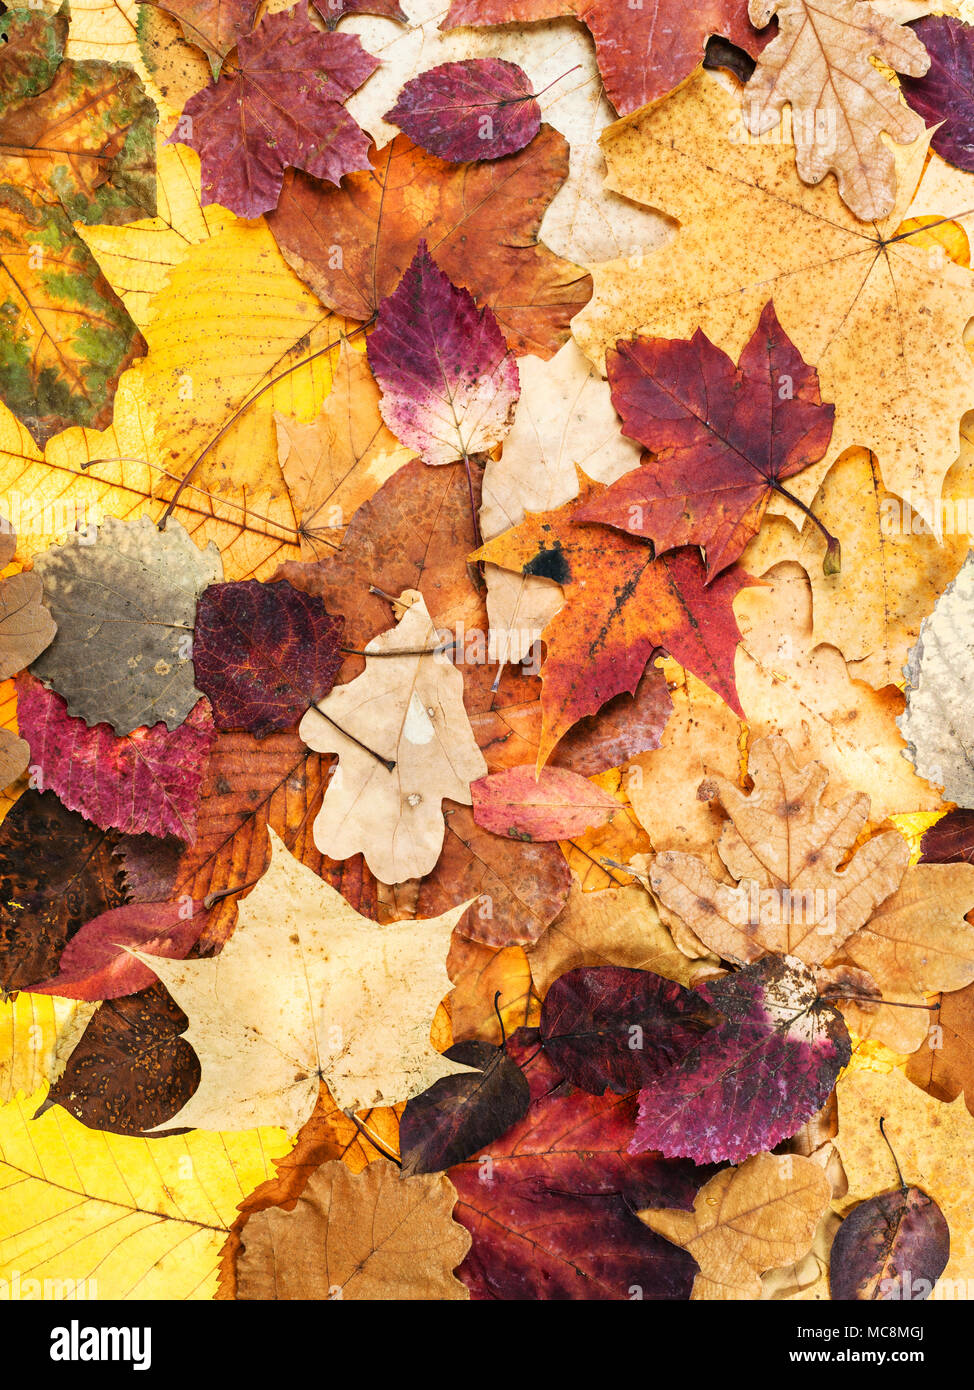 Natürliche Herbst Hintergrund aus verschiedenen bunten Blätter von Eichen, Ahorn, Erle, malus Bäume Stockfoto